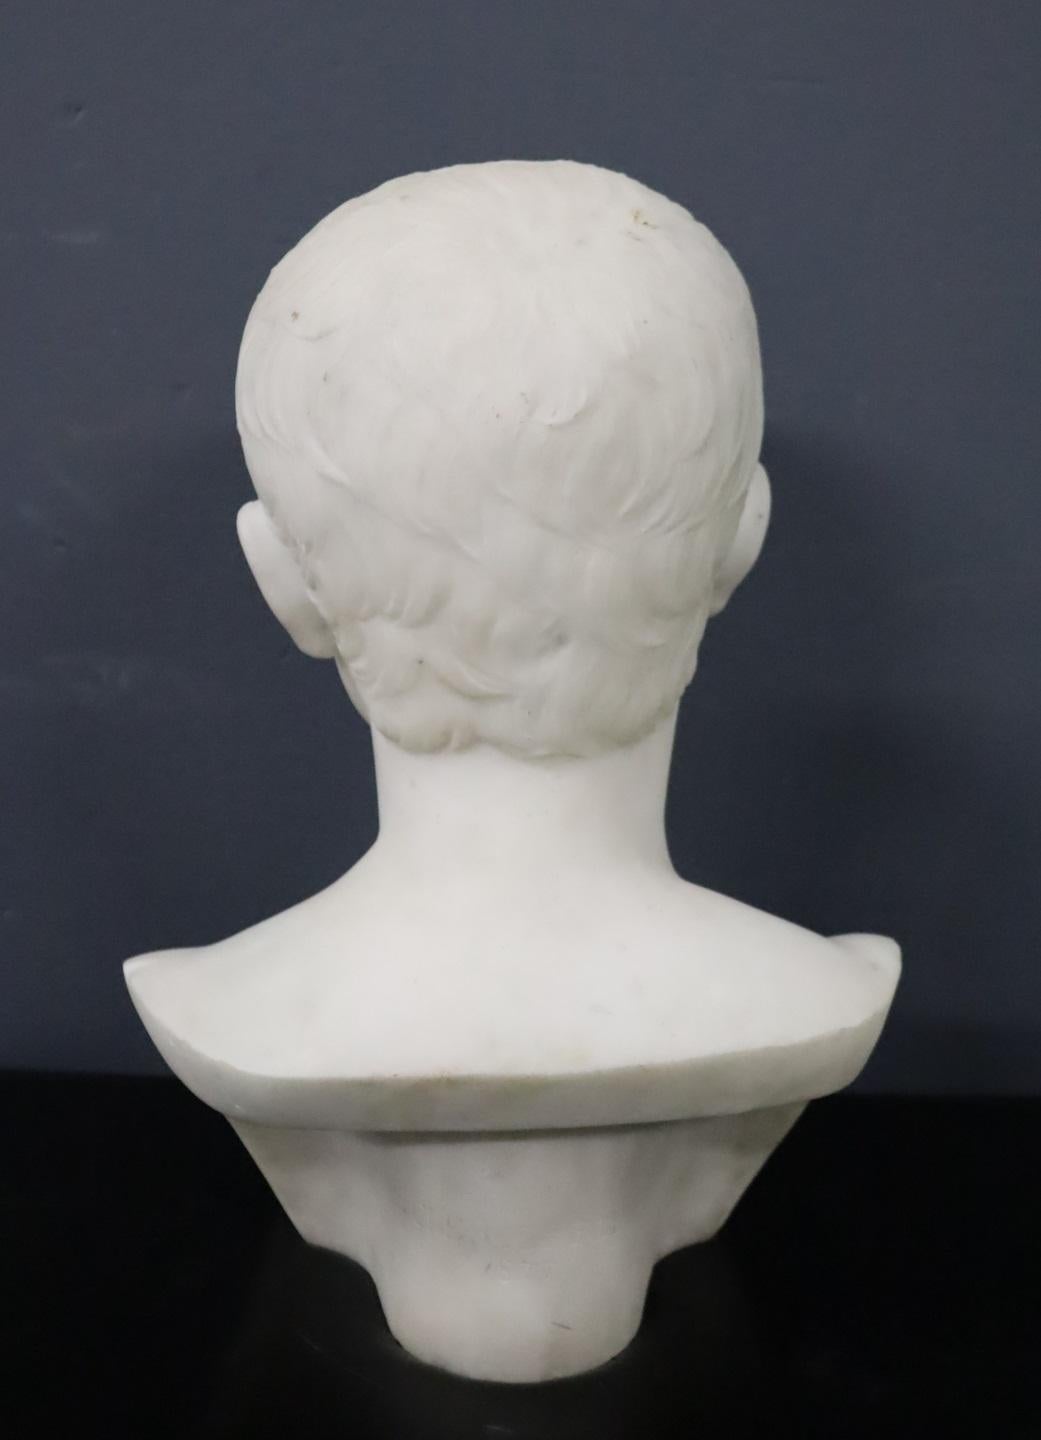 Italienische Marmorbüste des 19. Jahrhunderts, die den jungen Kaiser Octavian darstellt. Die aus weißem Carrara-Marmor gefertigte Skulptur ist ein exquisites Beispiel für neoklassizistische Werke und weist eine faszinierende Patina auf.